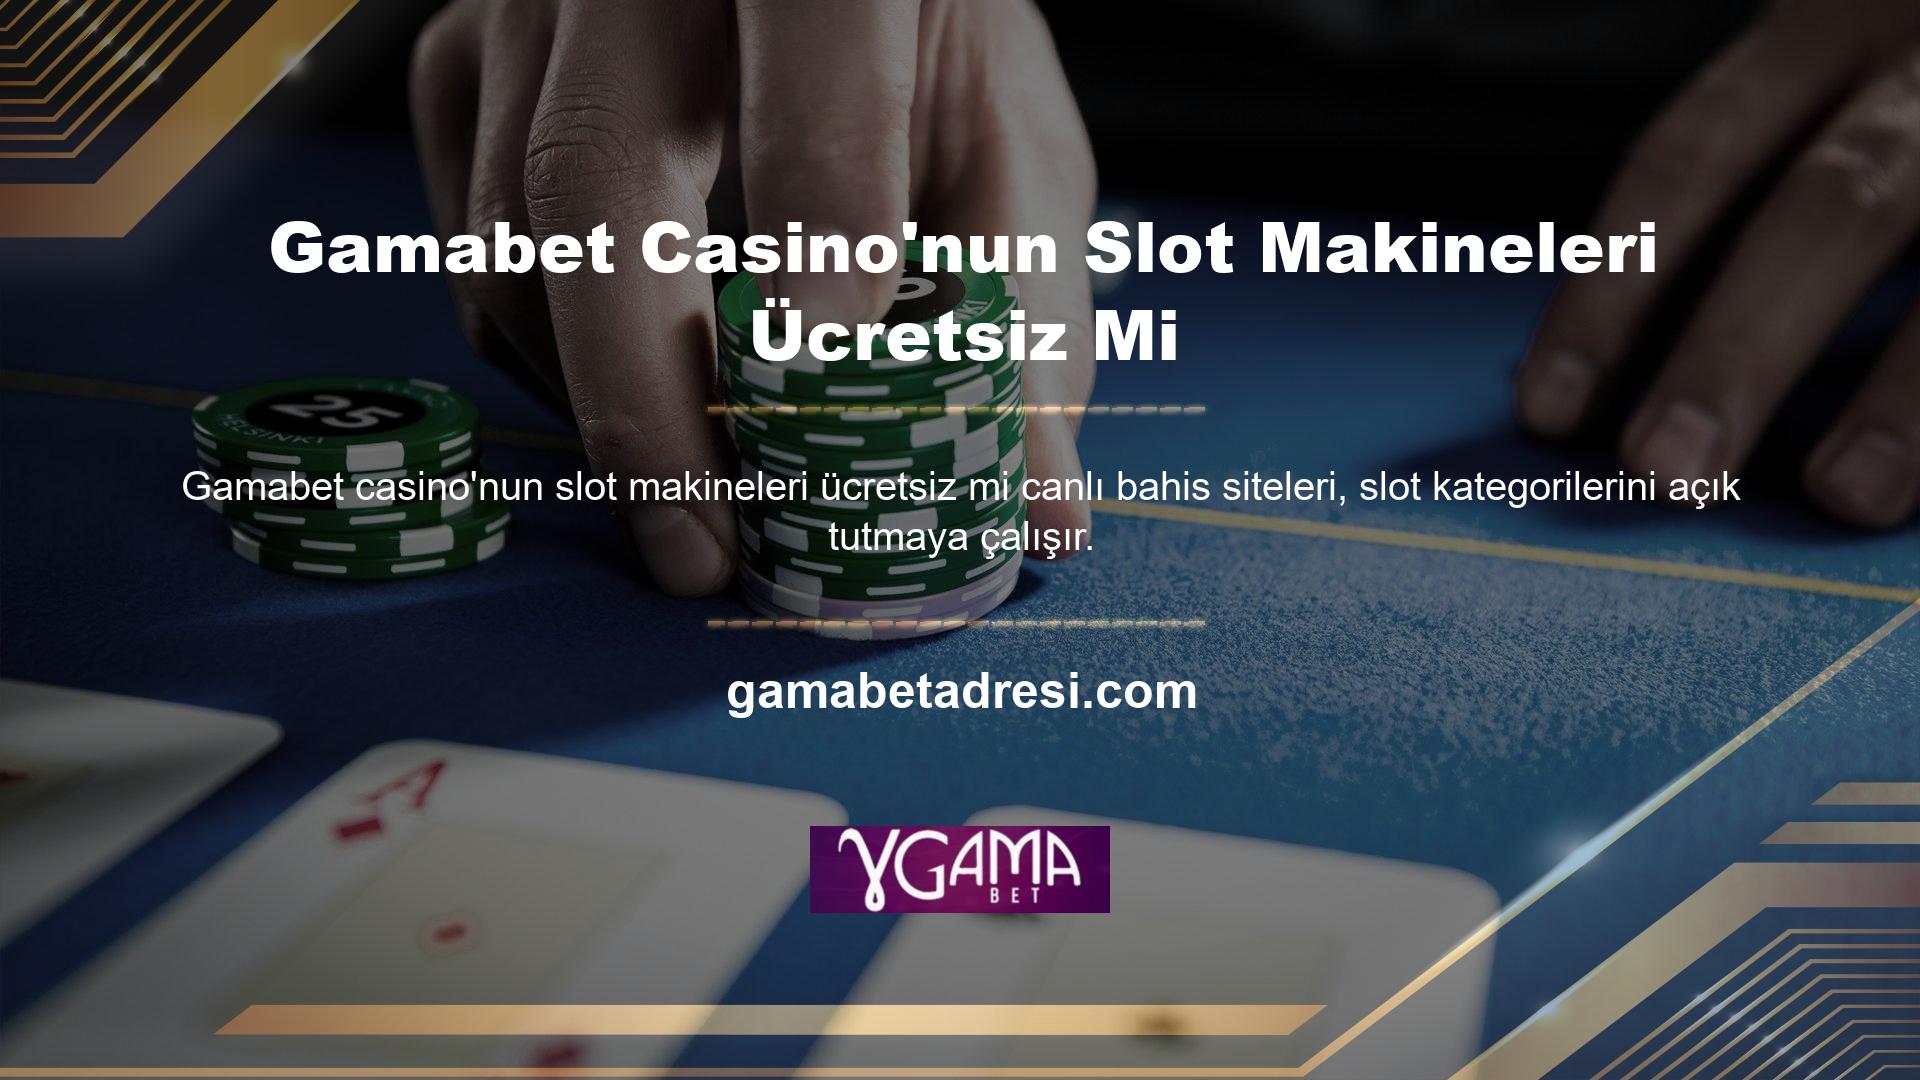 Ana sayfanın casino bölümünde farklı slot oyunu bulunmaktadır